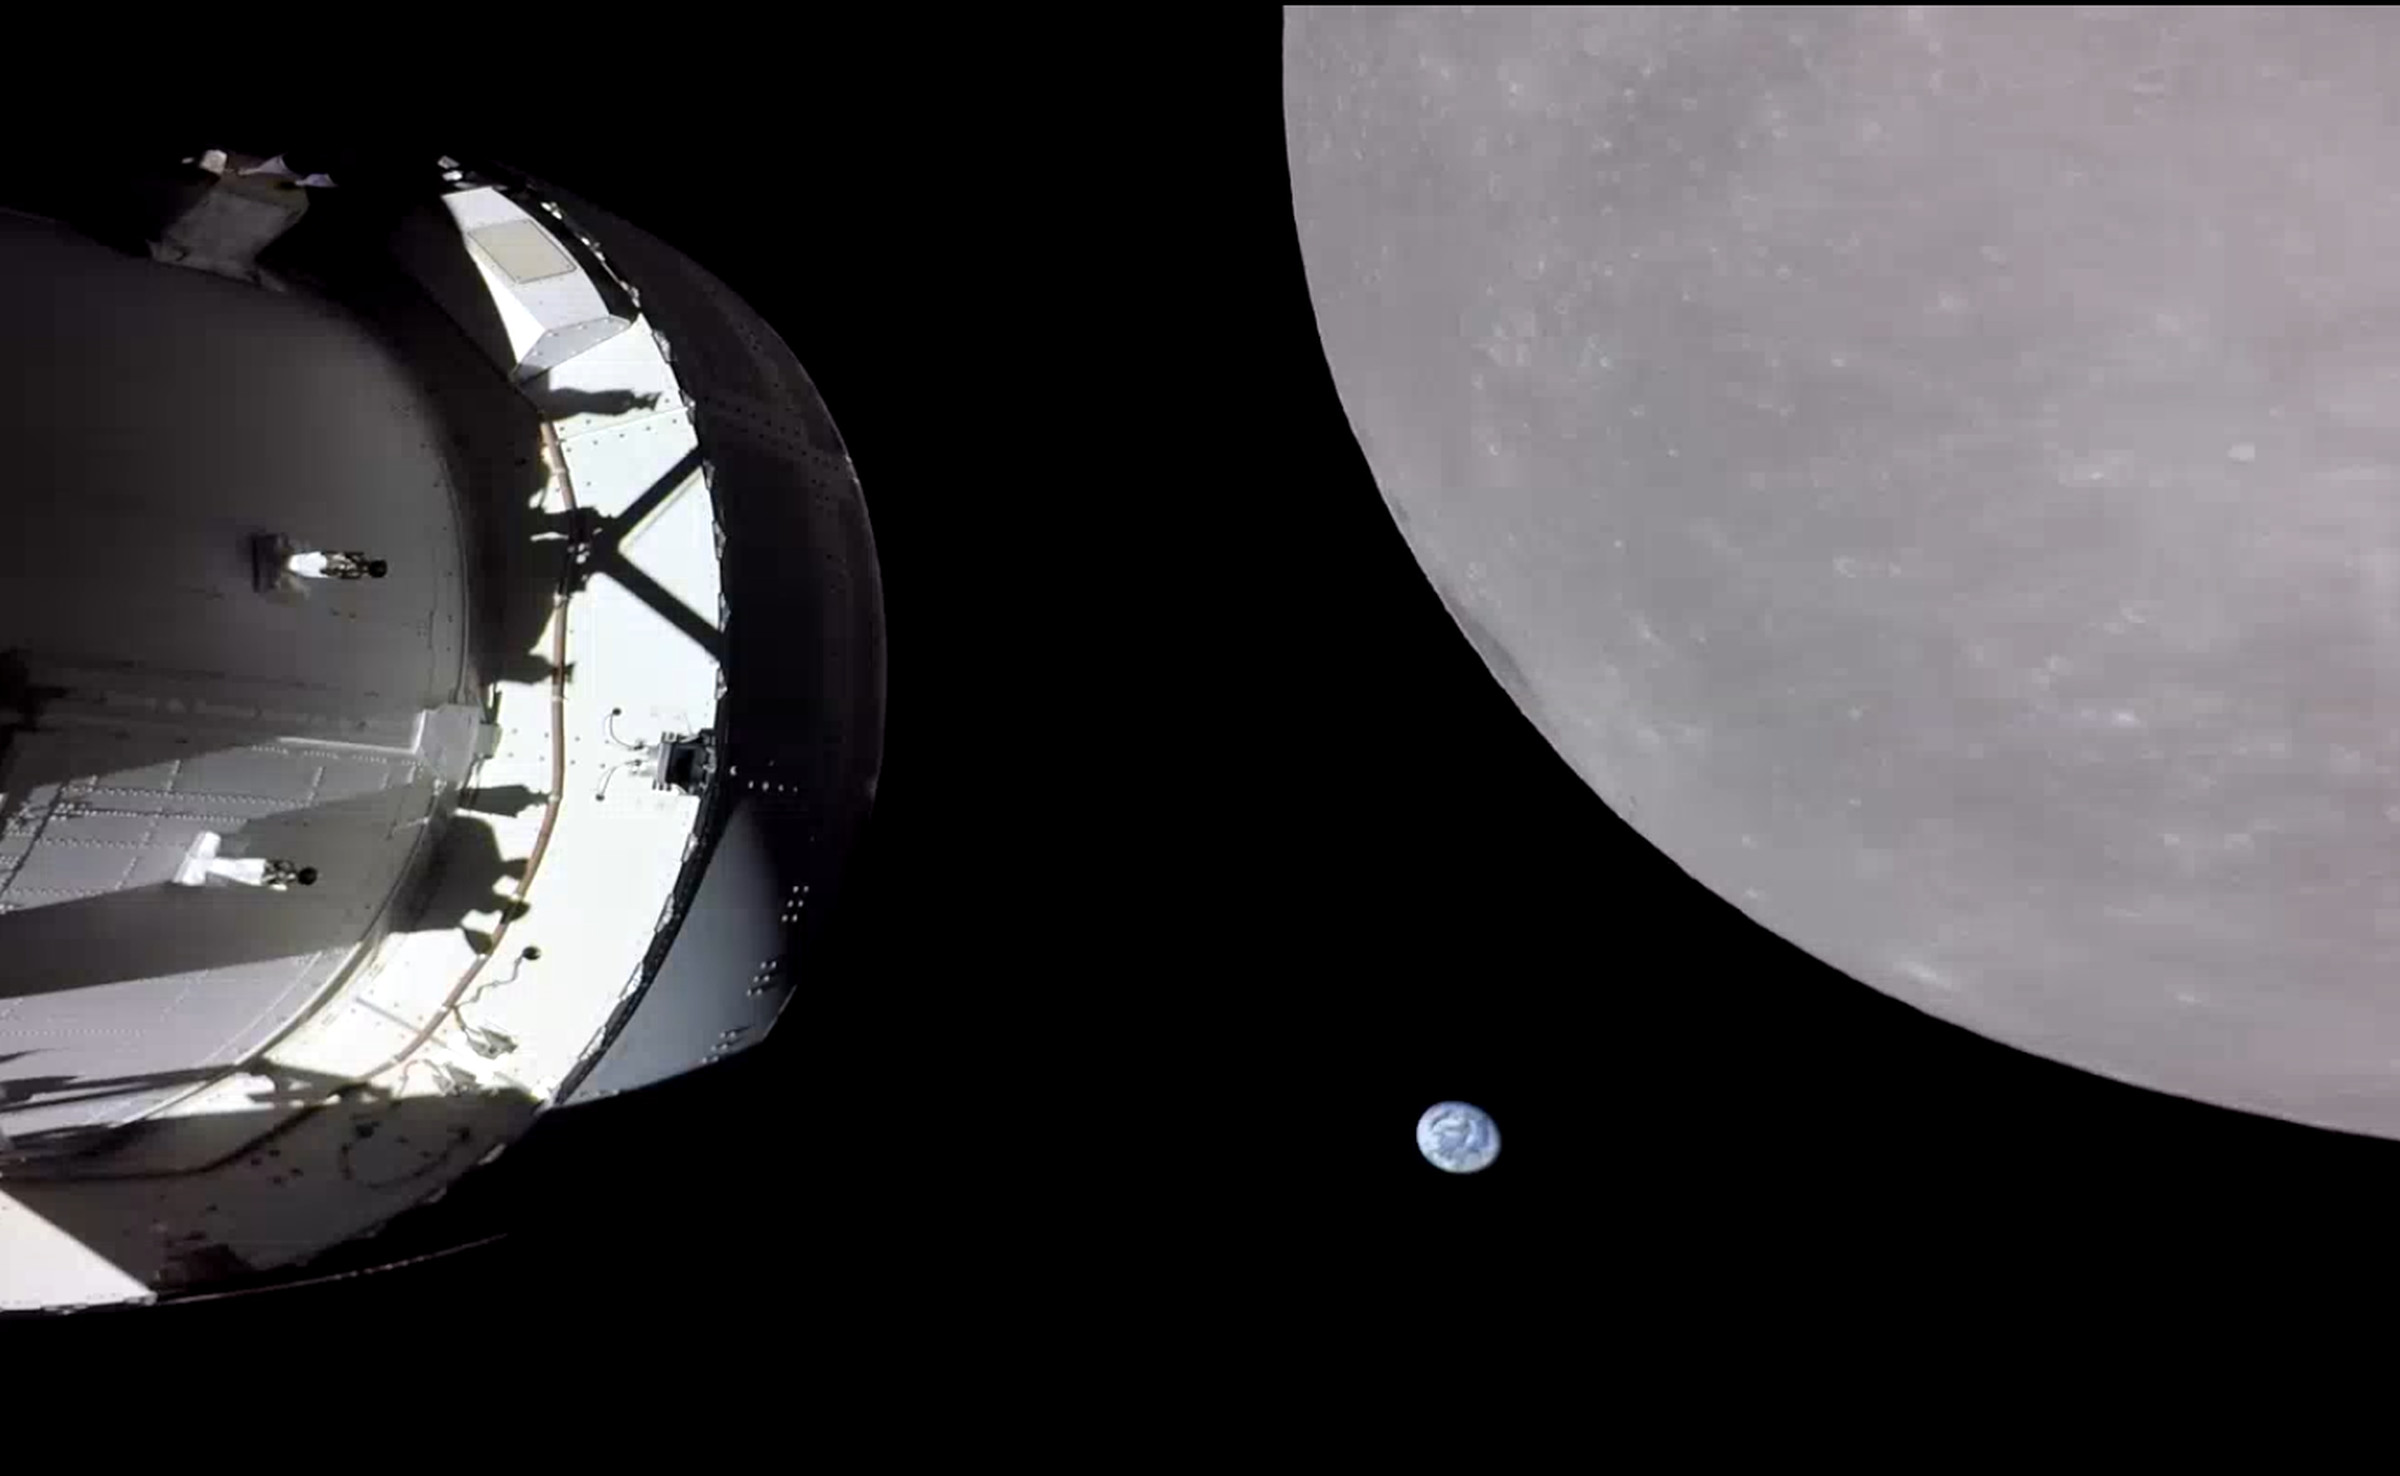 La capsule Orion se trouve dans l'ombre à gauche.  A droite, la masse grise de la Lune domine l'image.  Entre les deux, la Terre apparaît comme une petite boule bleue et blanche. 